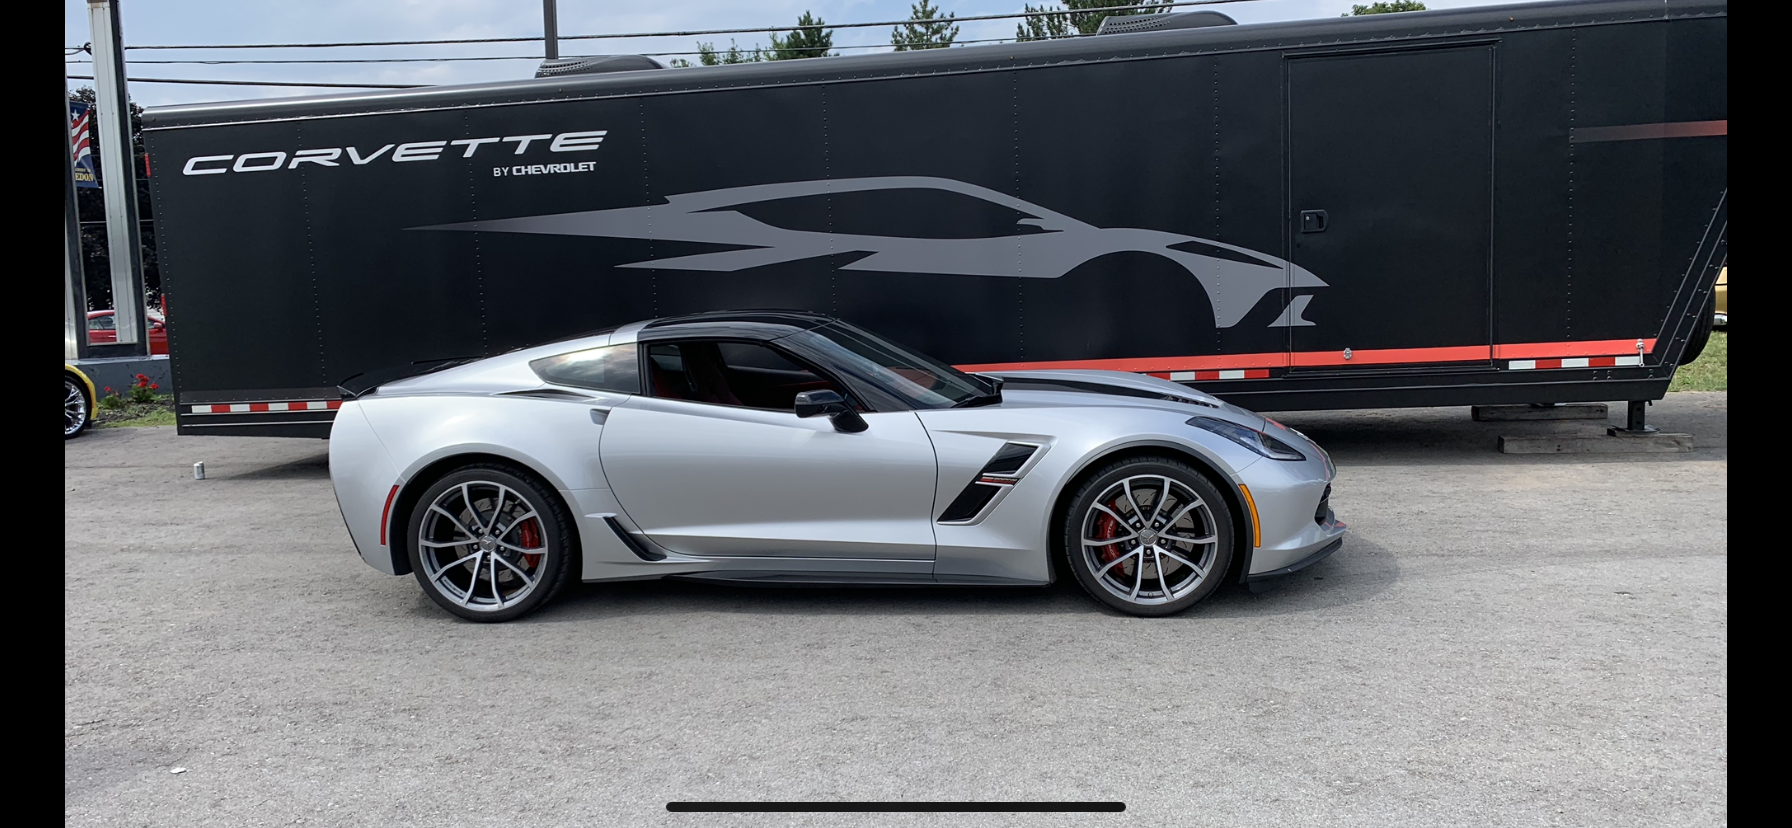 Race Deck Designs And Color Combos Corvetteforum Chevrolet